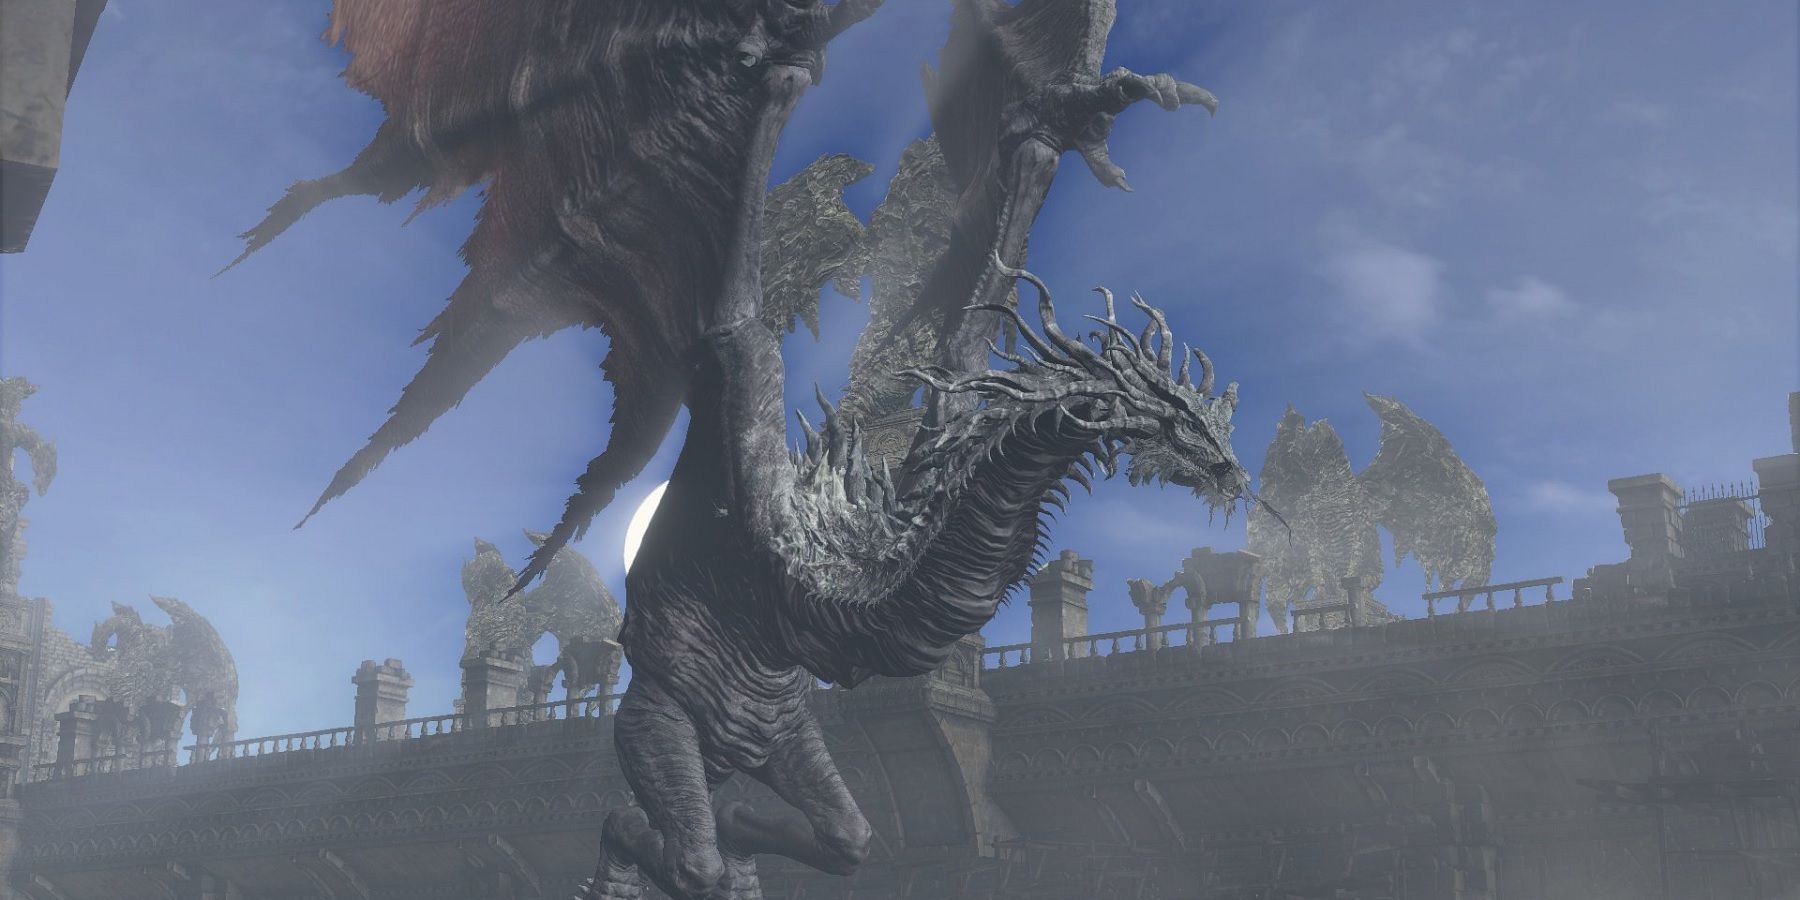 De oude draak van Dark Souls 3 was een interessante ontmoeting die de landing niet hield